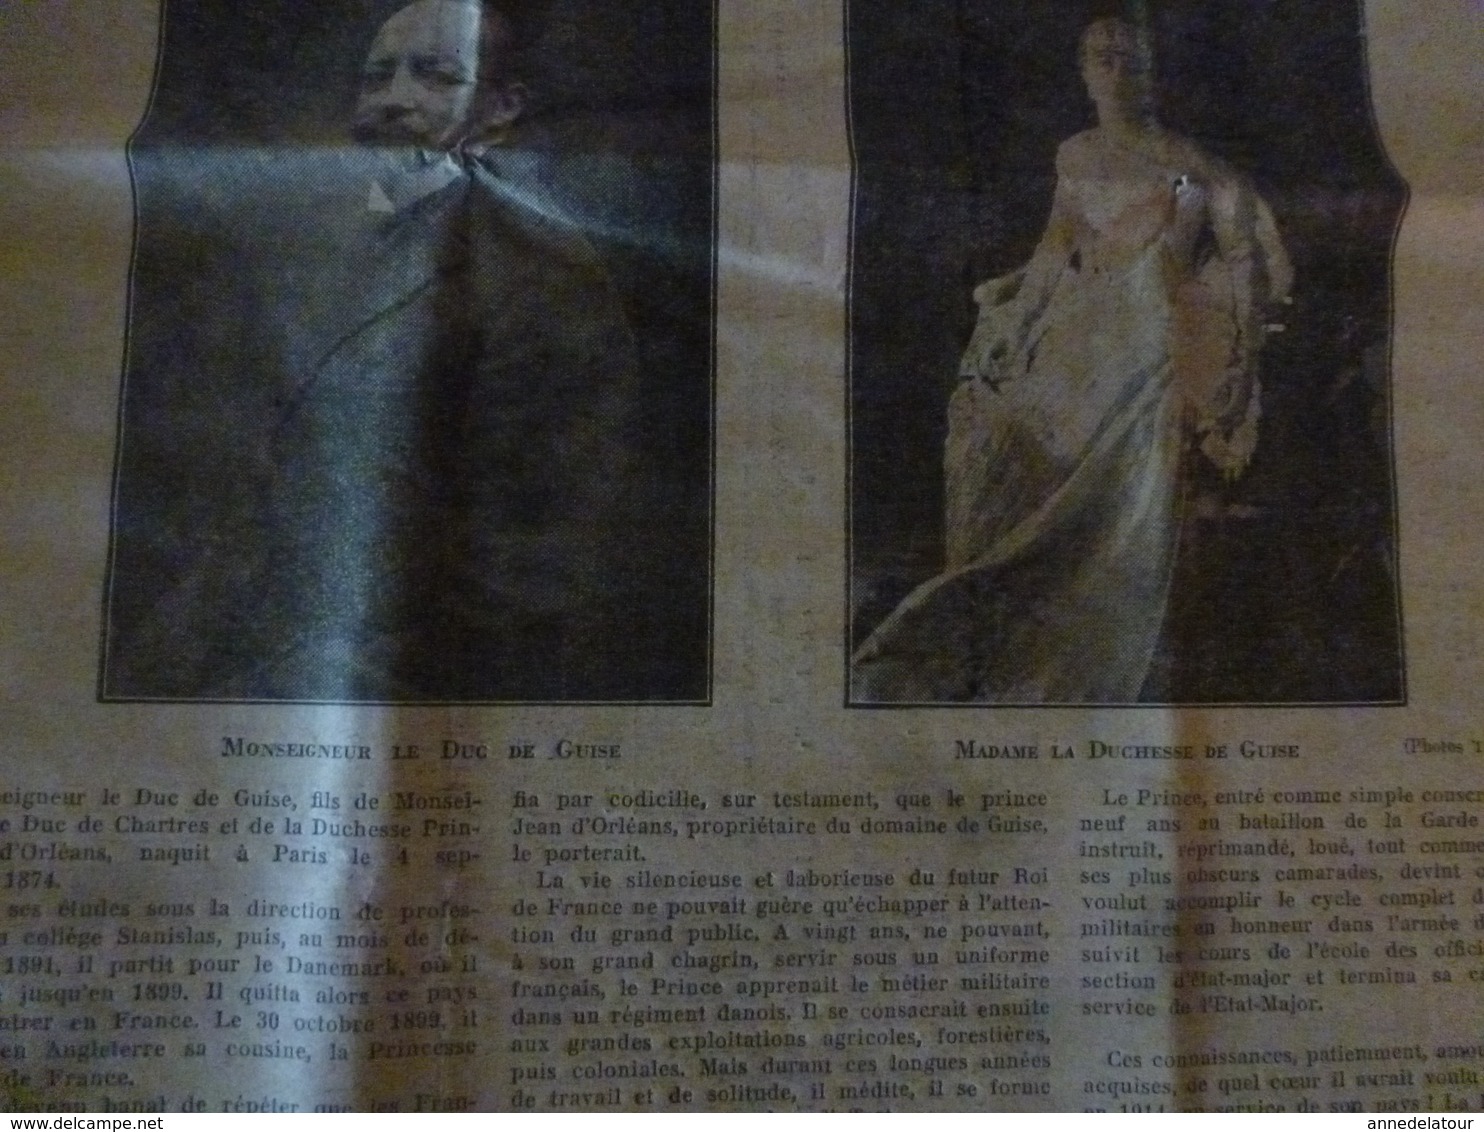 1931 N° Spécial de L'ACTION FRANCAISE ---> Le mariage du Dauphin (Journal monarchiste virulent, antisémite)